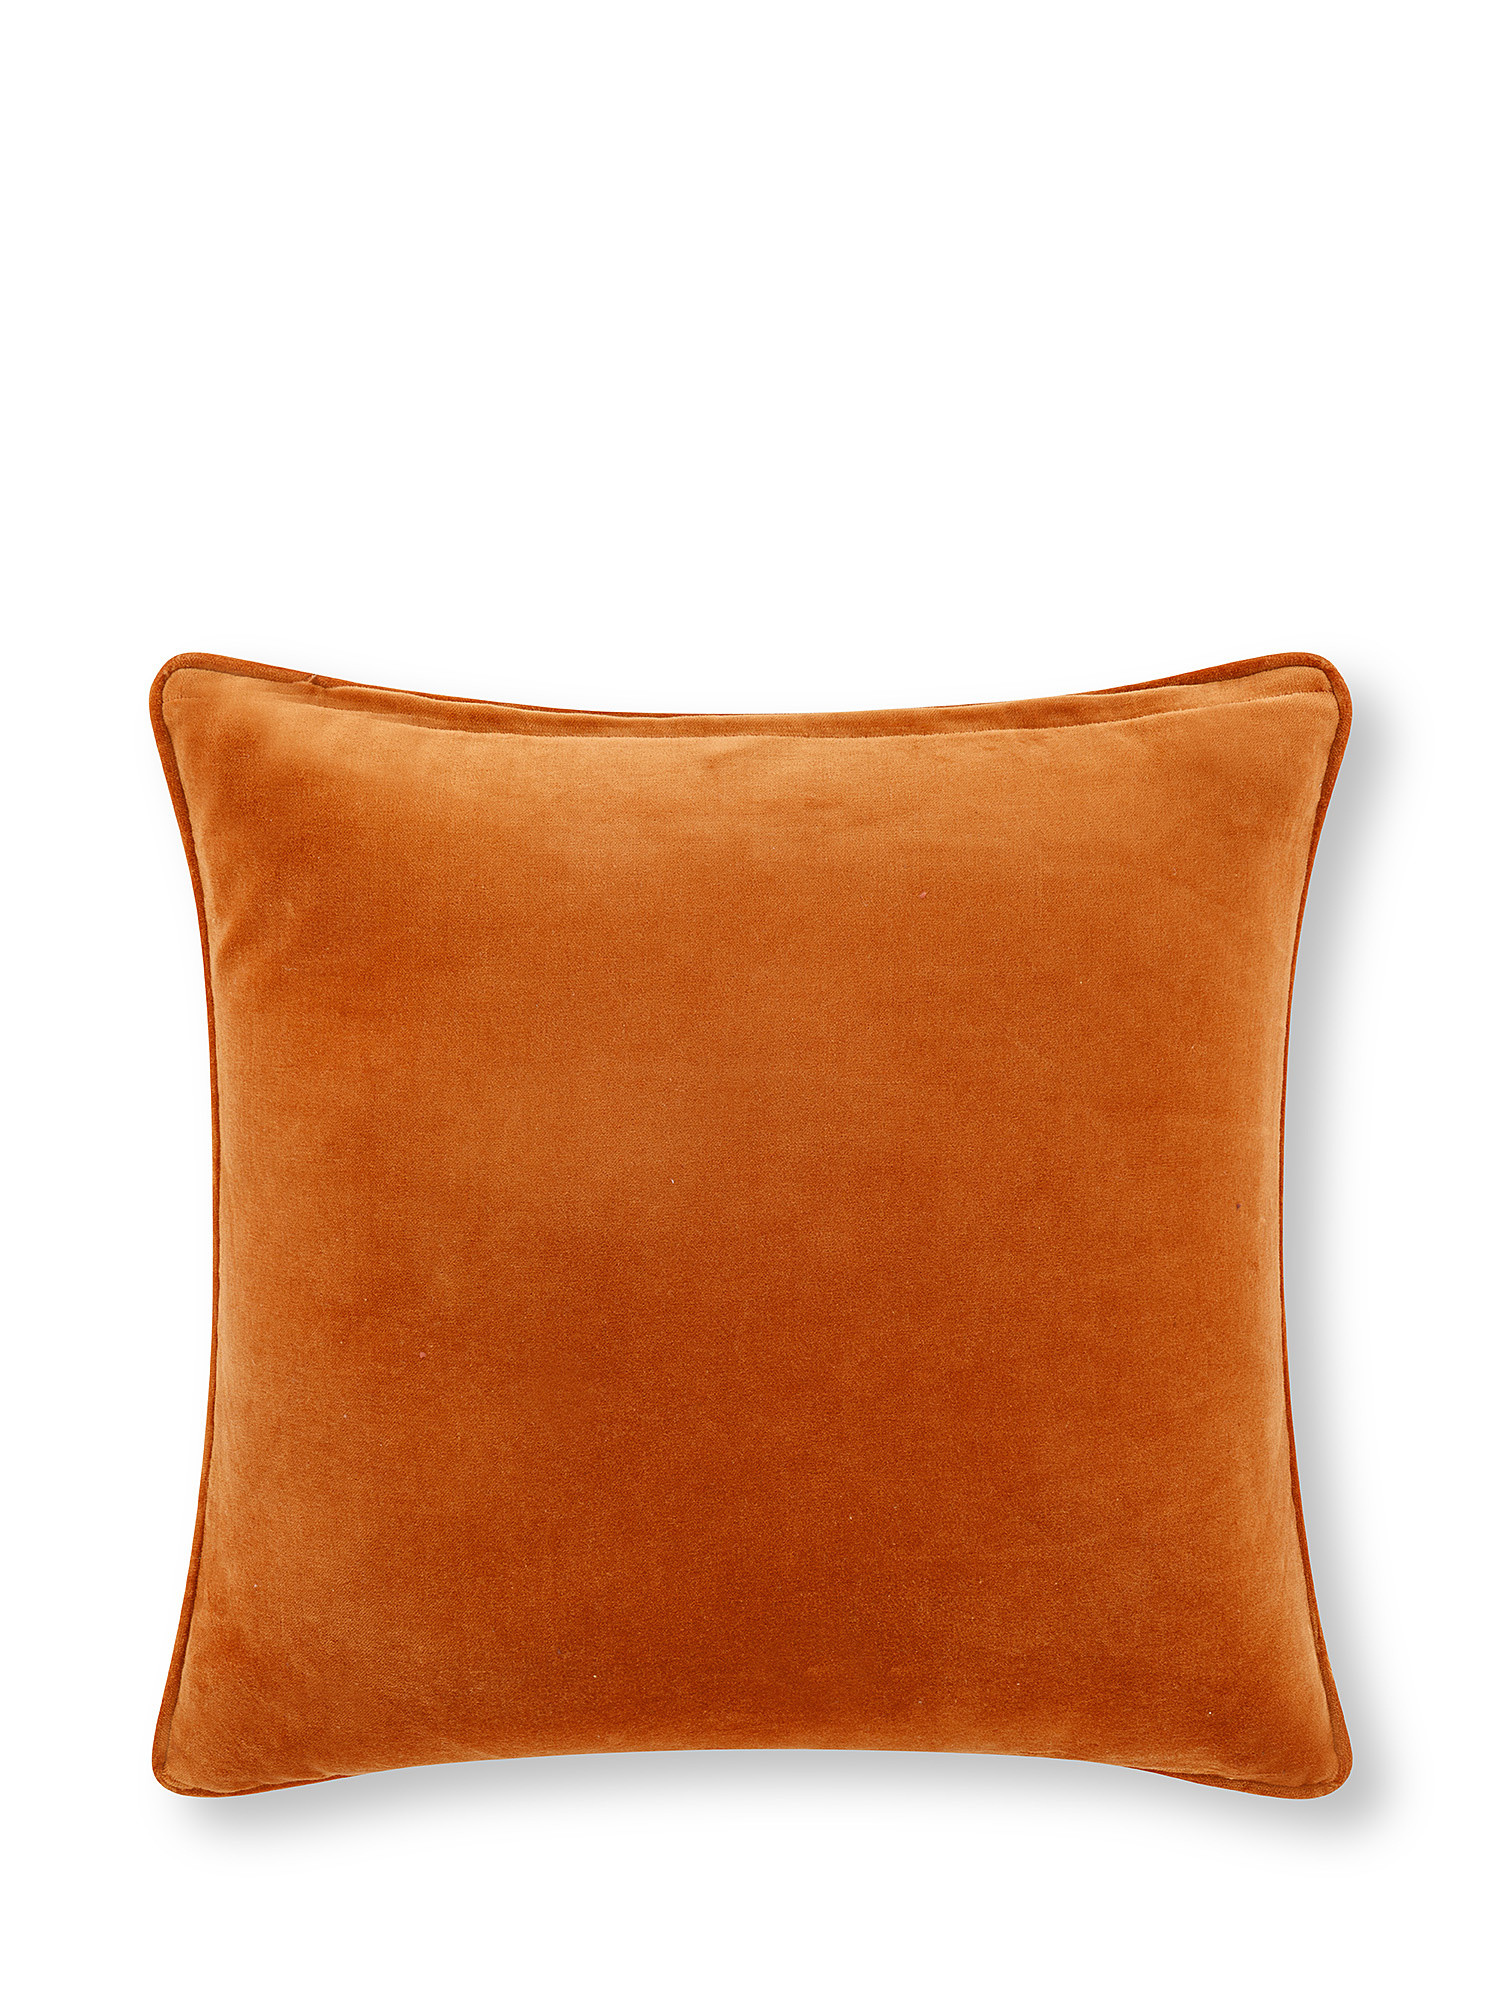 Plain velvet cushion 45x45cm, Orange, large image number 1